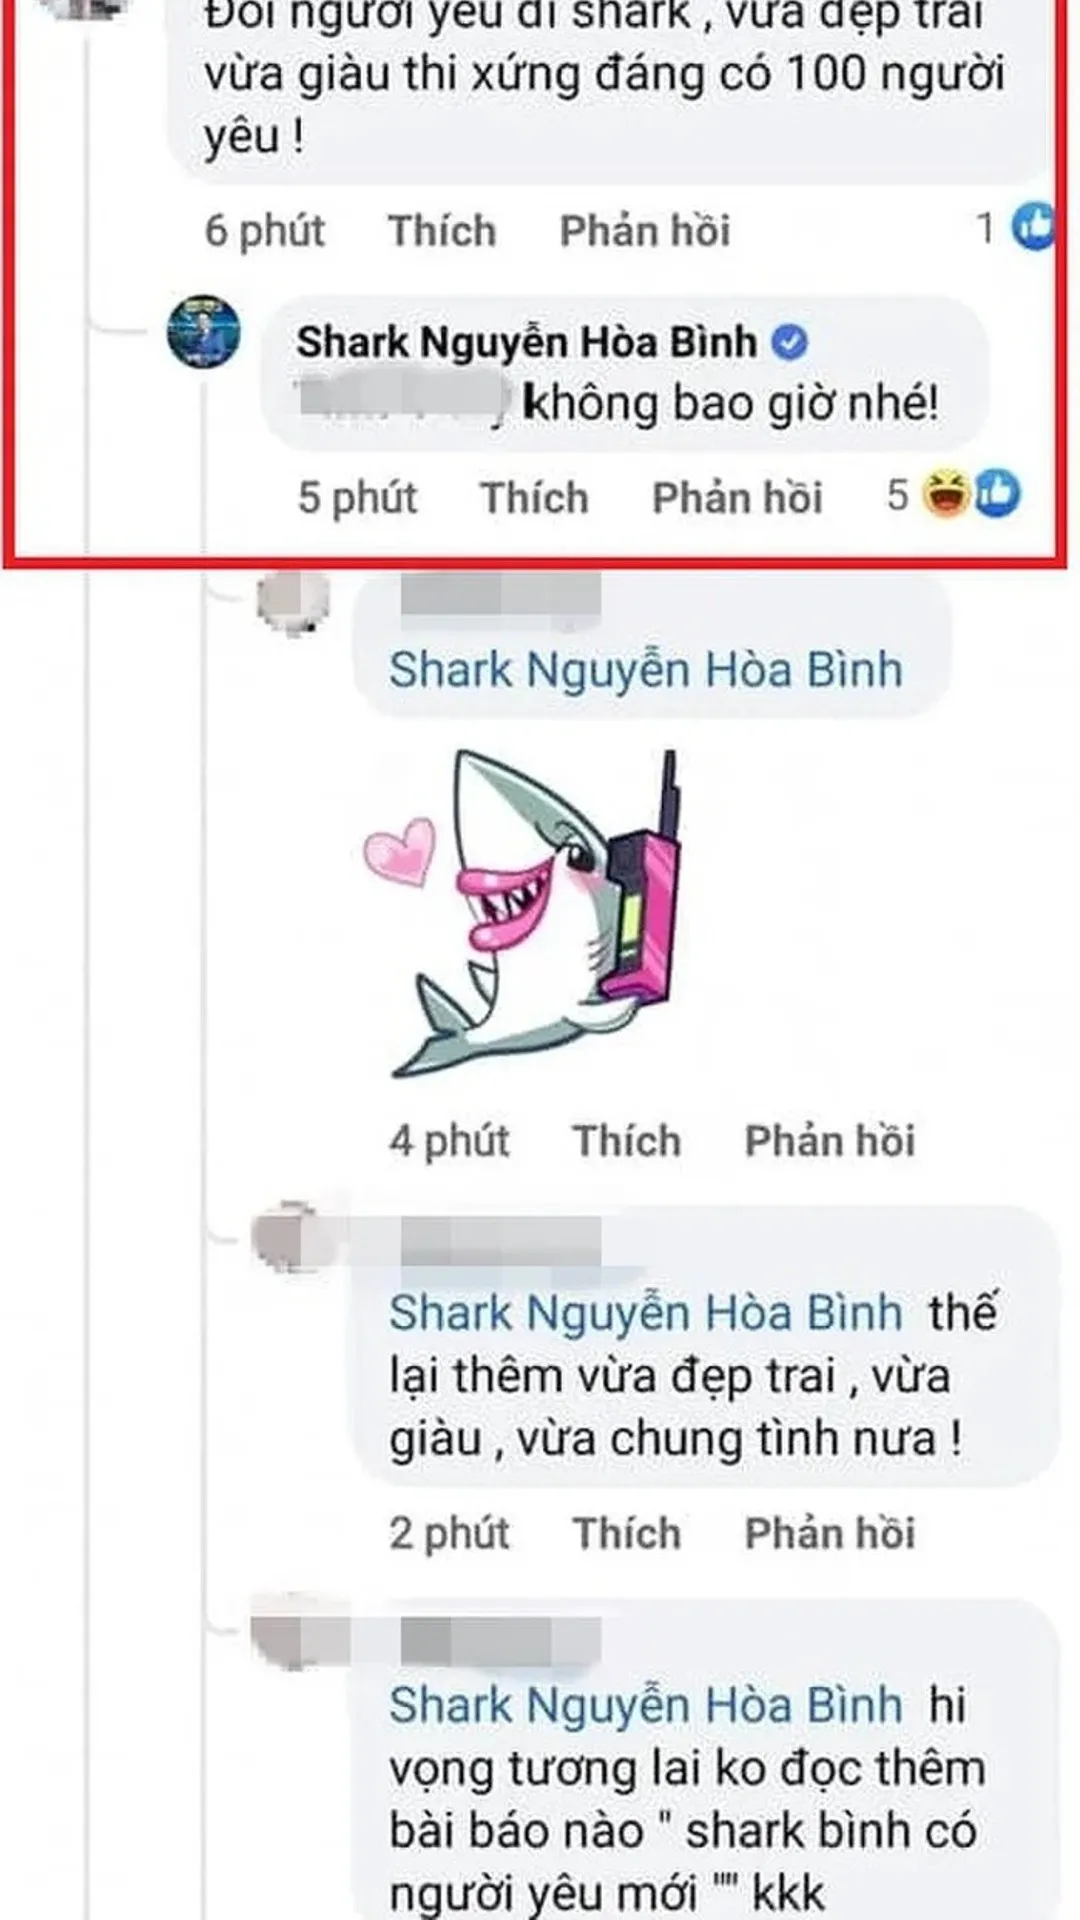 Thái độ của shark Bình khi bị khuyên 'đổi người yêu'